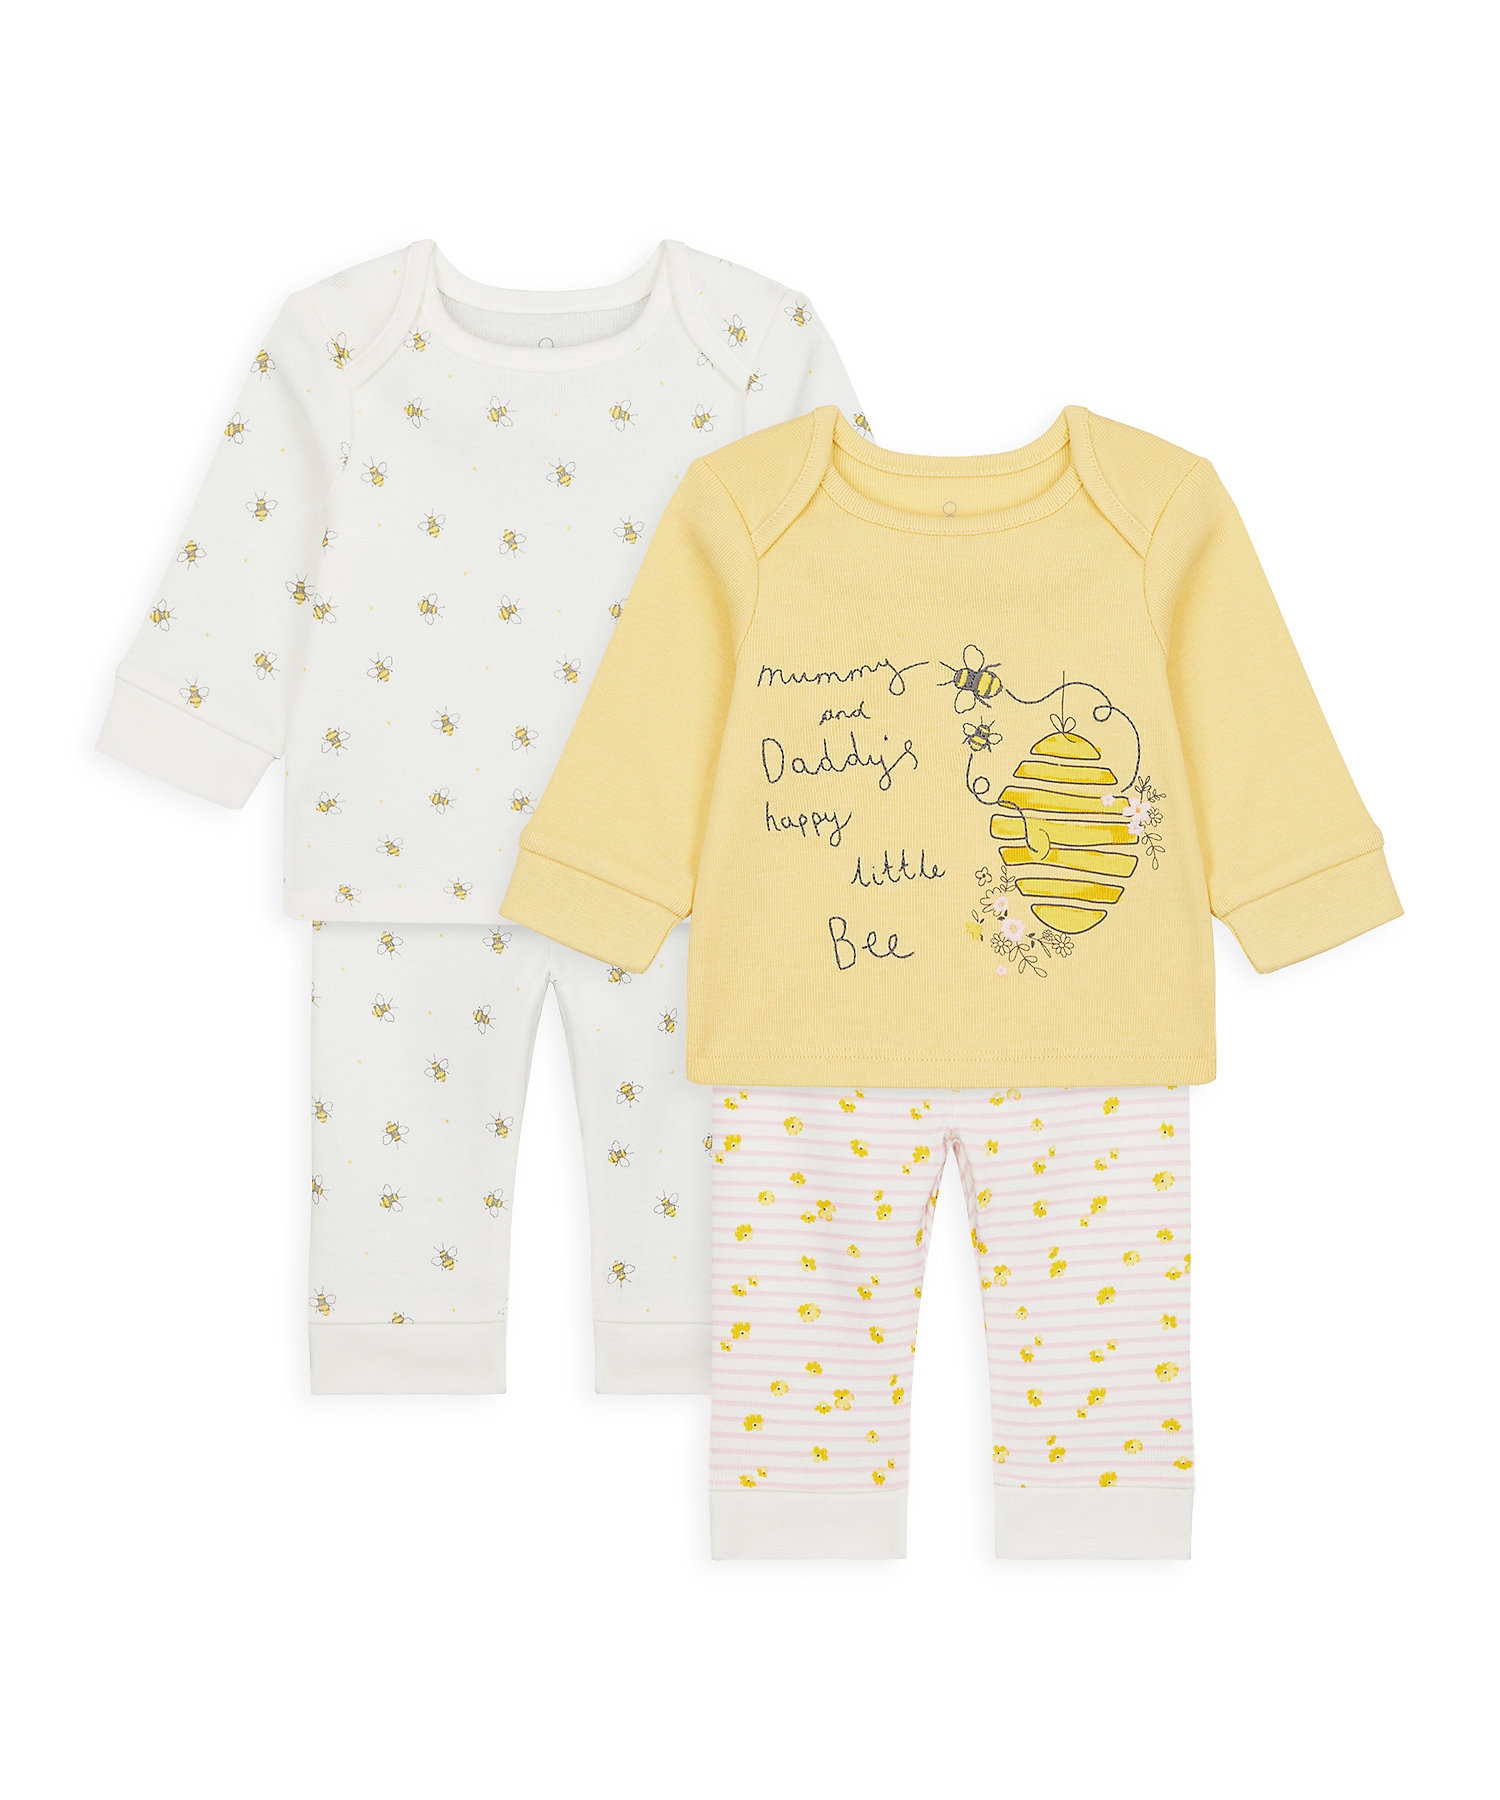 Girls Full Sleeves Pyjama Set Bee Print - Pack Of 2 - Yellow White